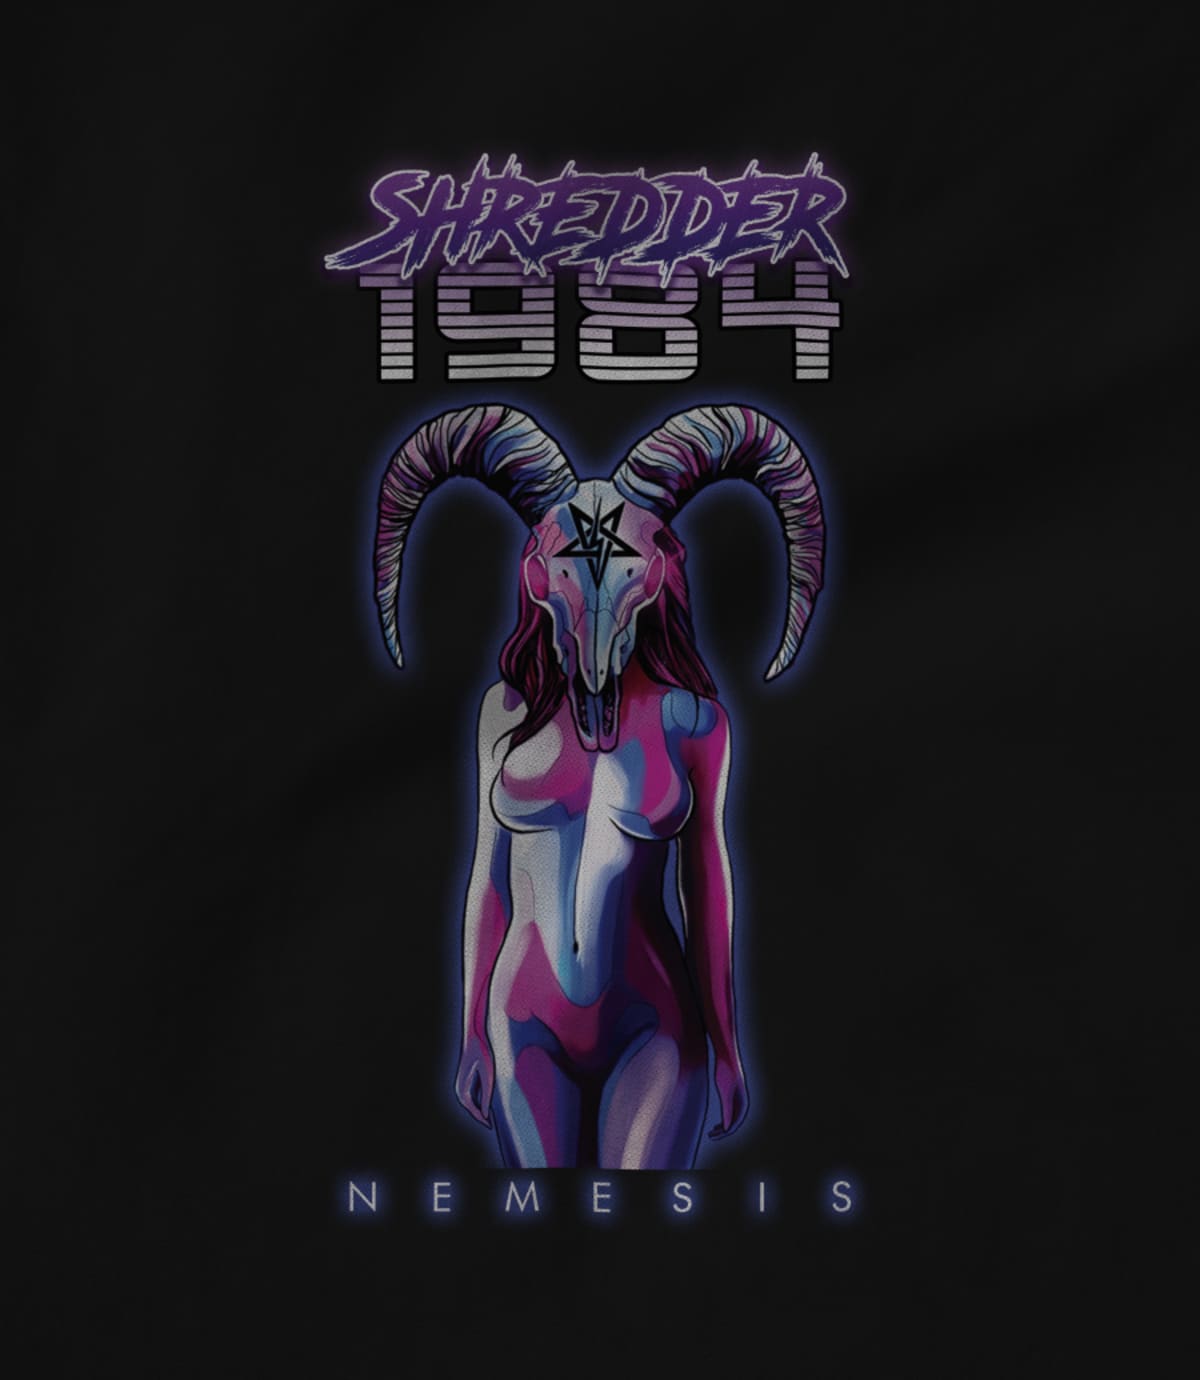 Shredder 1984 shredder 1984 nemesis 1550140981